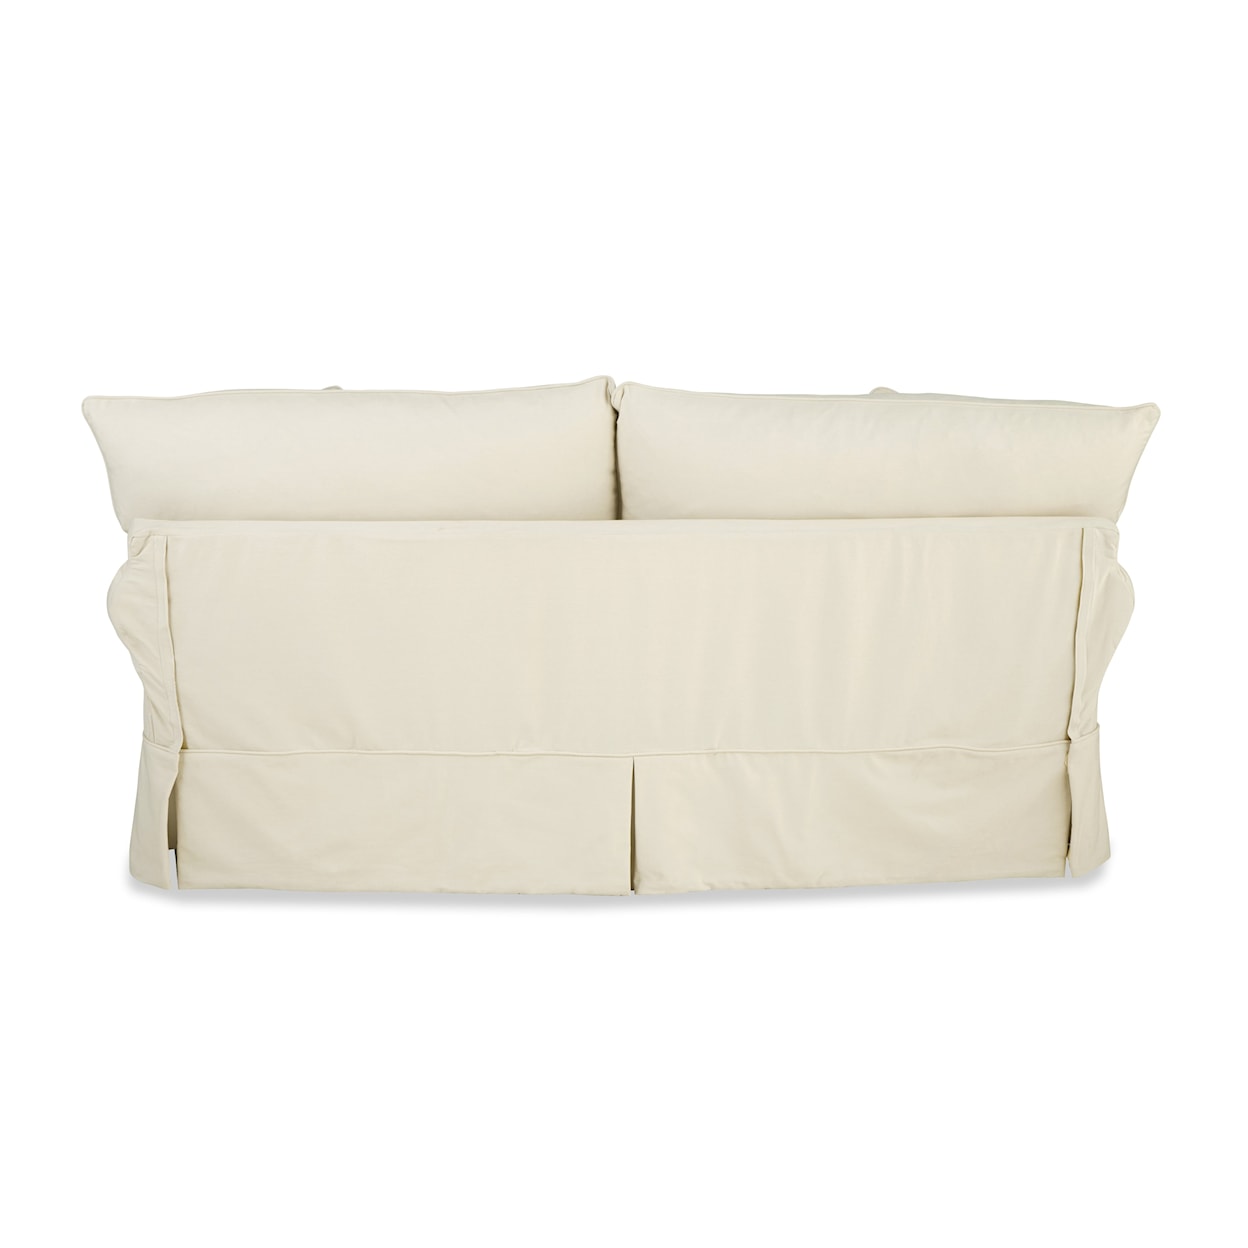 Hickory Craft 936450BD Slipcover Sofa